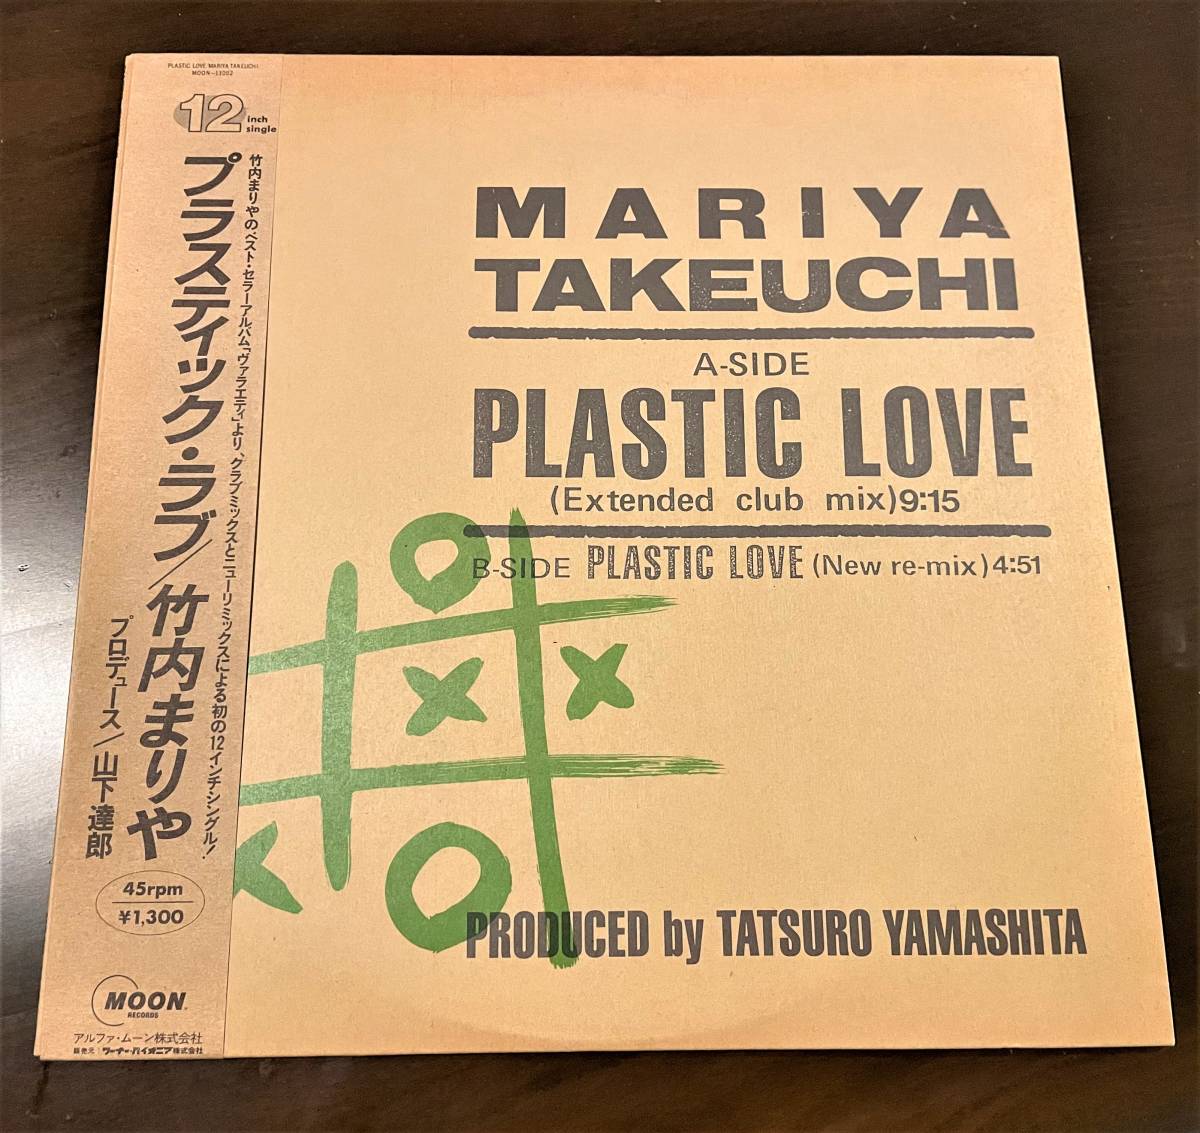 ヤフオク! -「竹内まりや plastic love」(レコード) の落札相場・落札価格